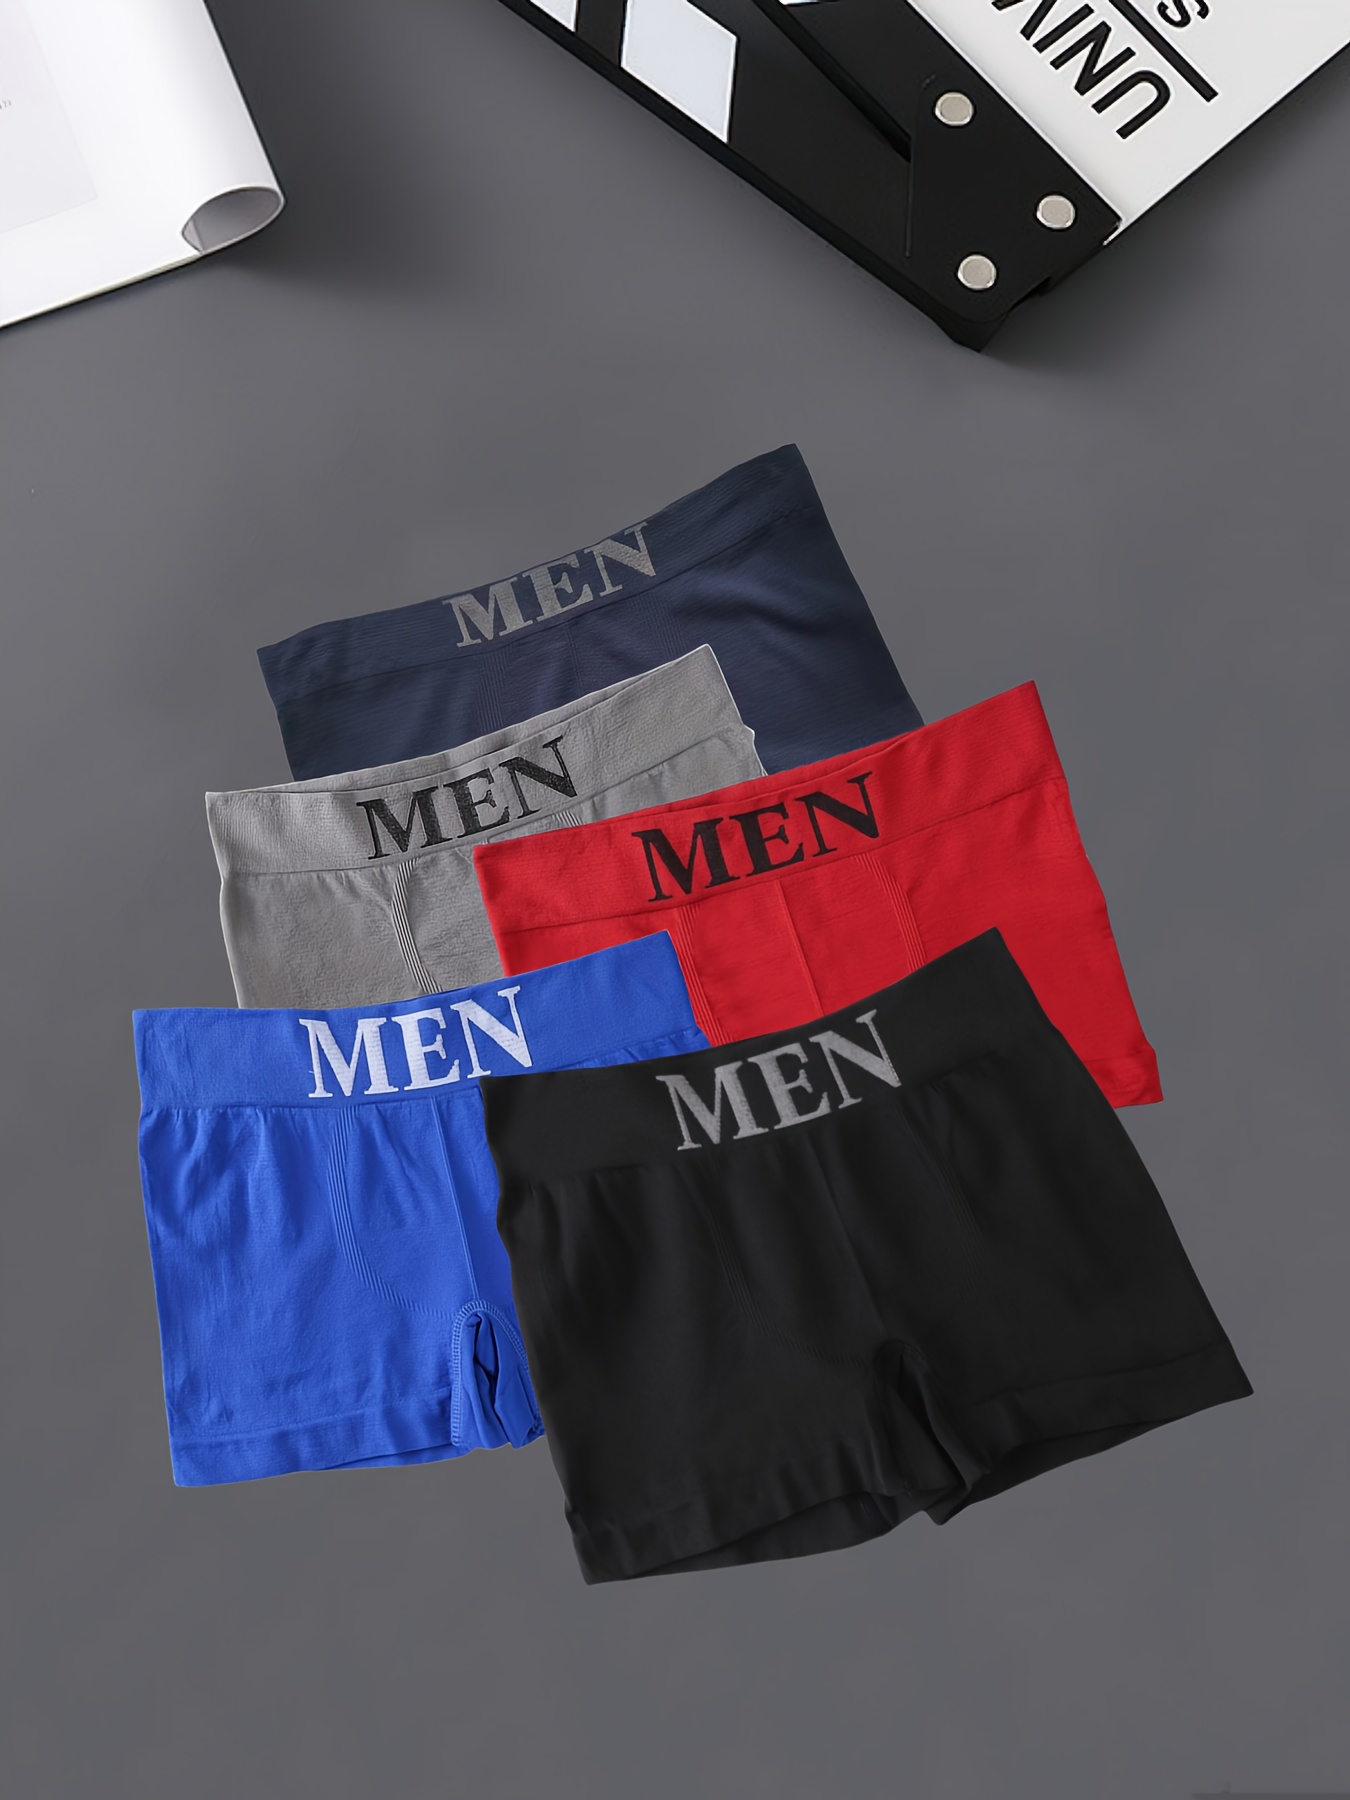 Men's Star Pattern Fashion Versatile Boxers Briefs Underwear